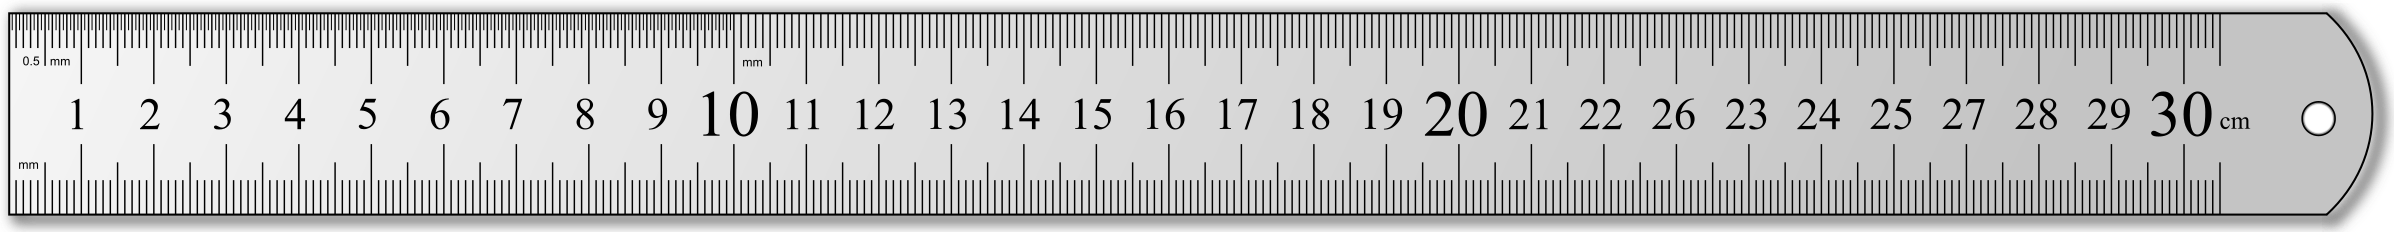 30 Centimeter Ruler Outlet